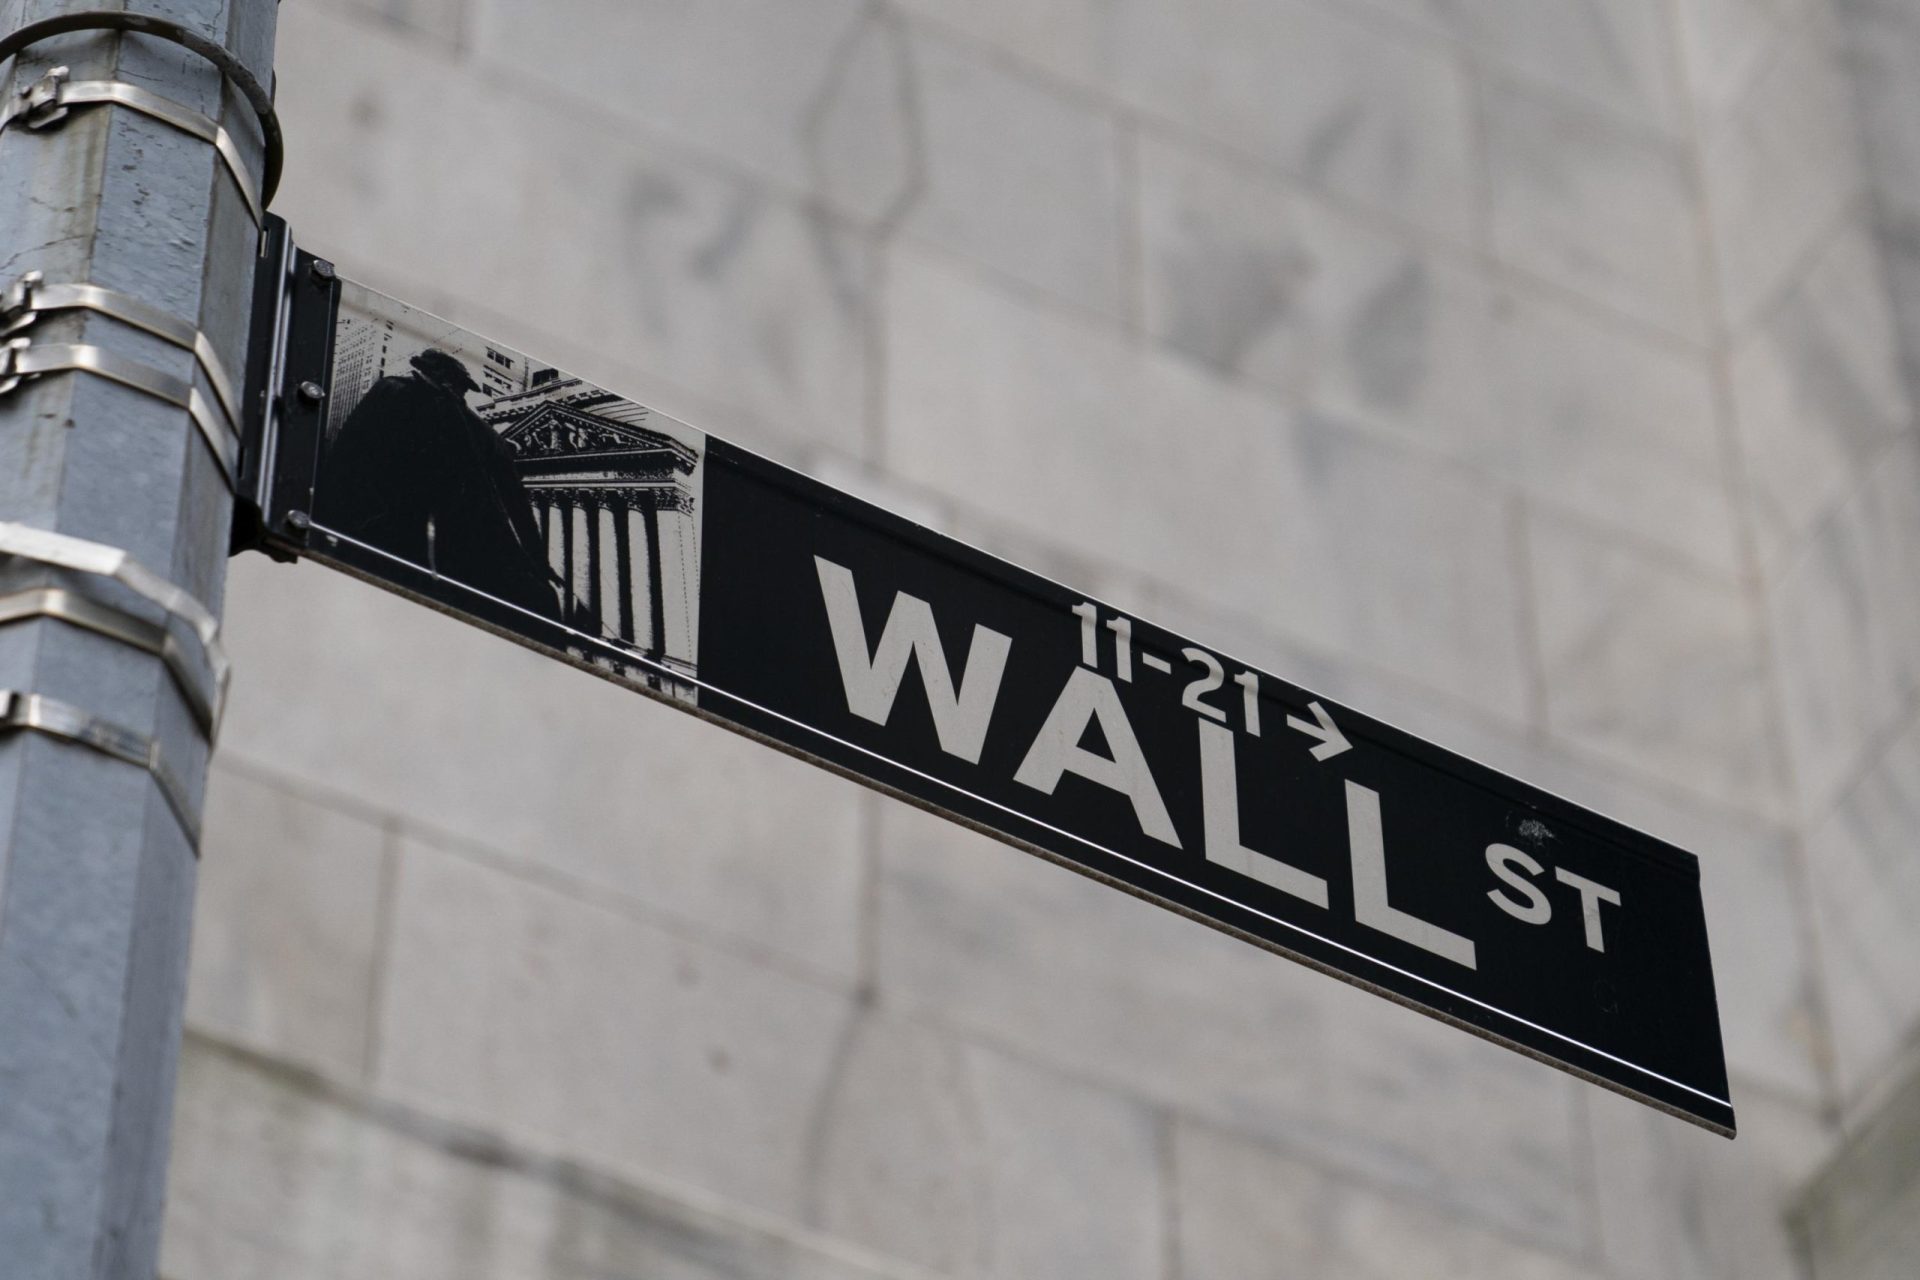 Las acciones asiáticas caen, haciéndose eco de la caída generalizada en Wall Street